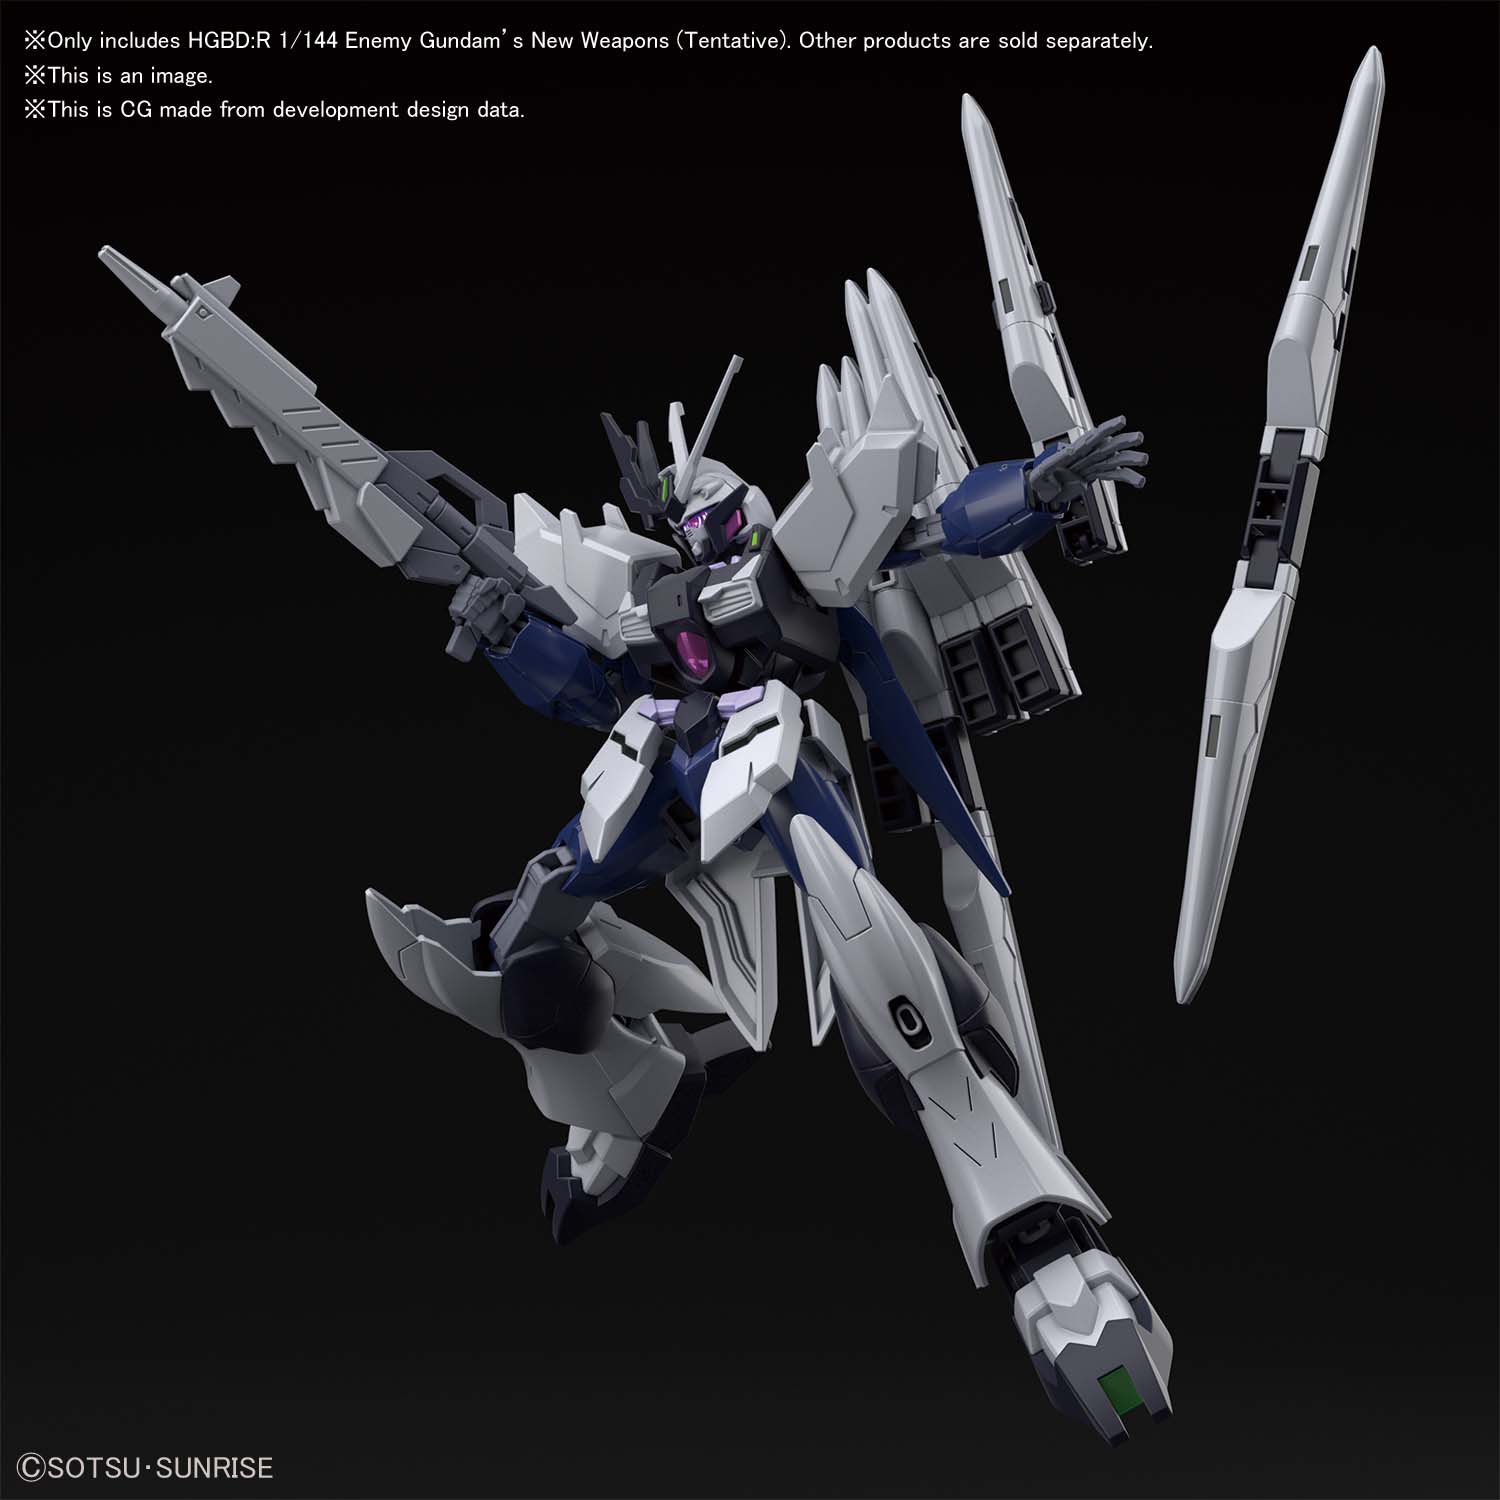 HGBD:R - AGP-X1NU Fake v Gundam Weapon